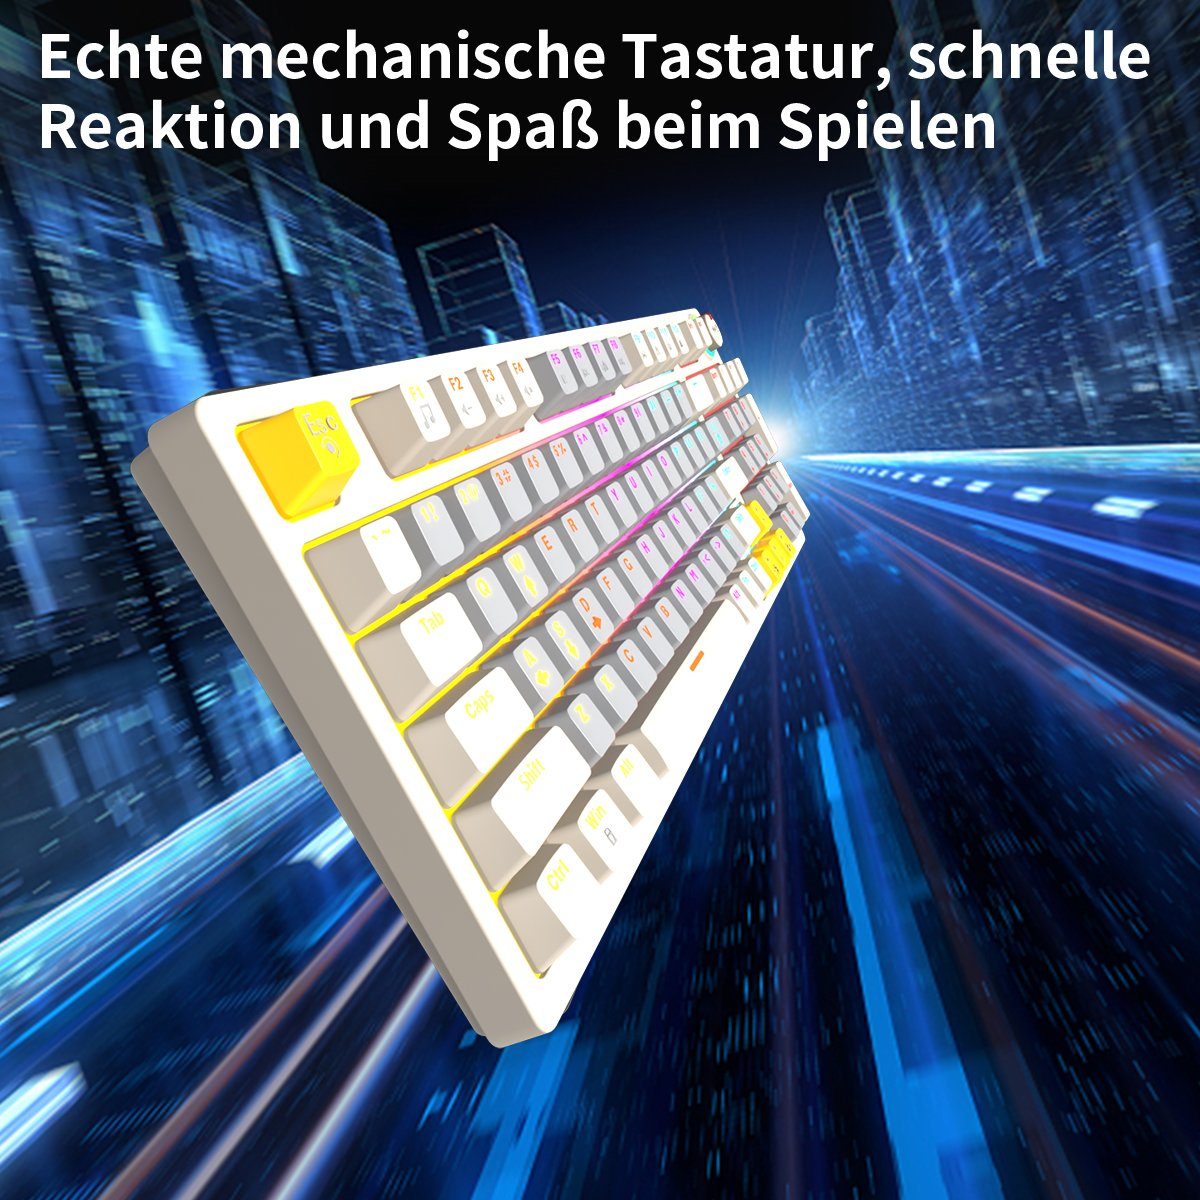 BUMHUM Nicht deutsche mechanische und RGB-Gaming-Tastatur (Zweifarbige Gaming-Tastatur Echte Doppel- Tastatur Kabe) Dreifarbige mit Weiß Tastatur,RGB-Beleuchtung